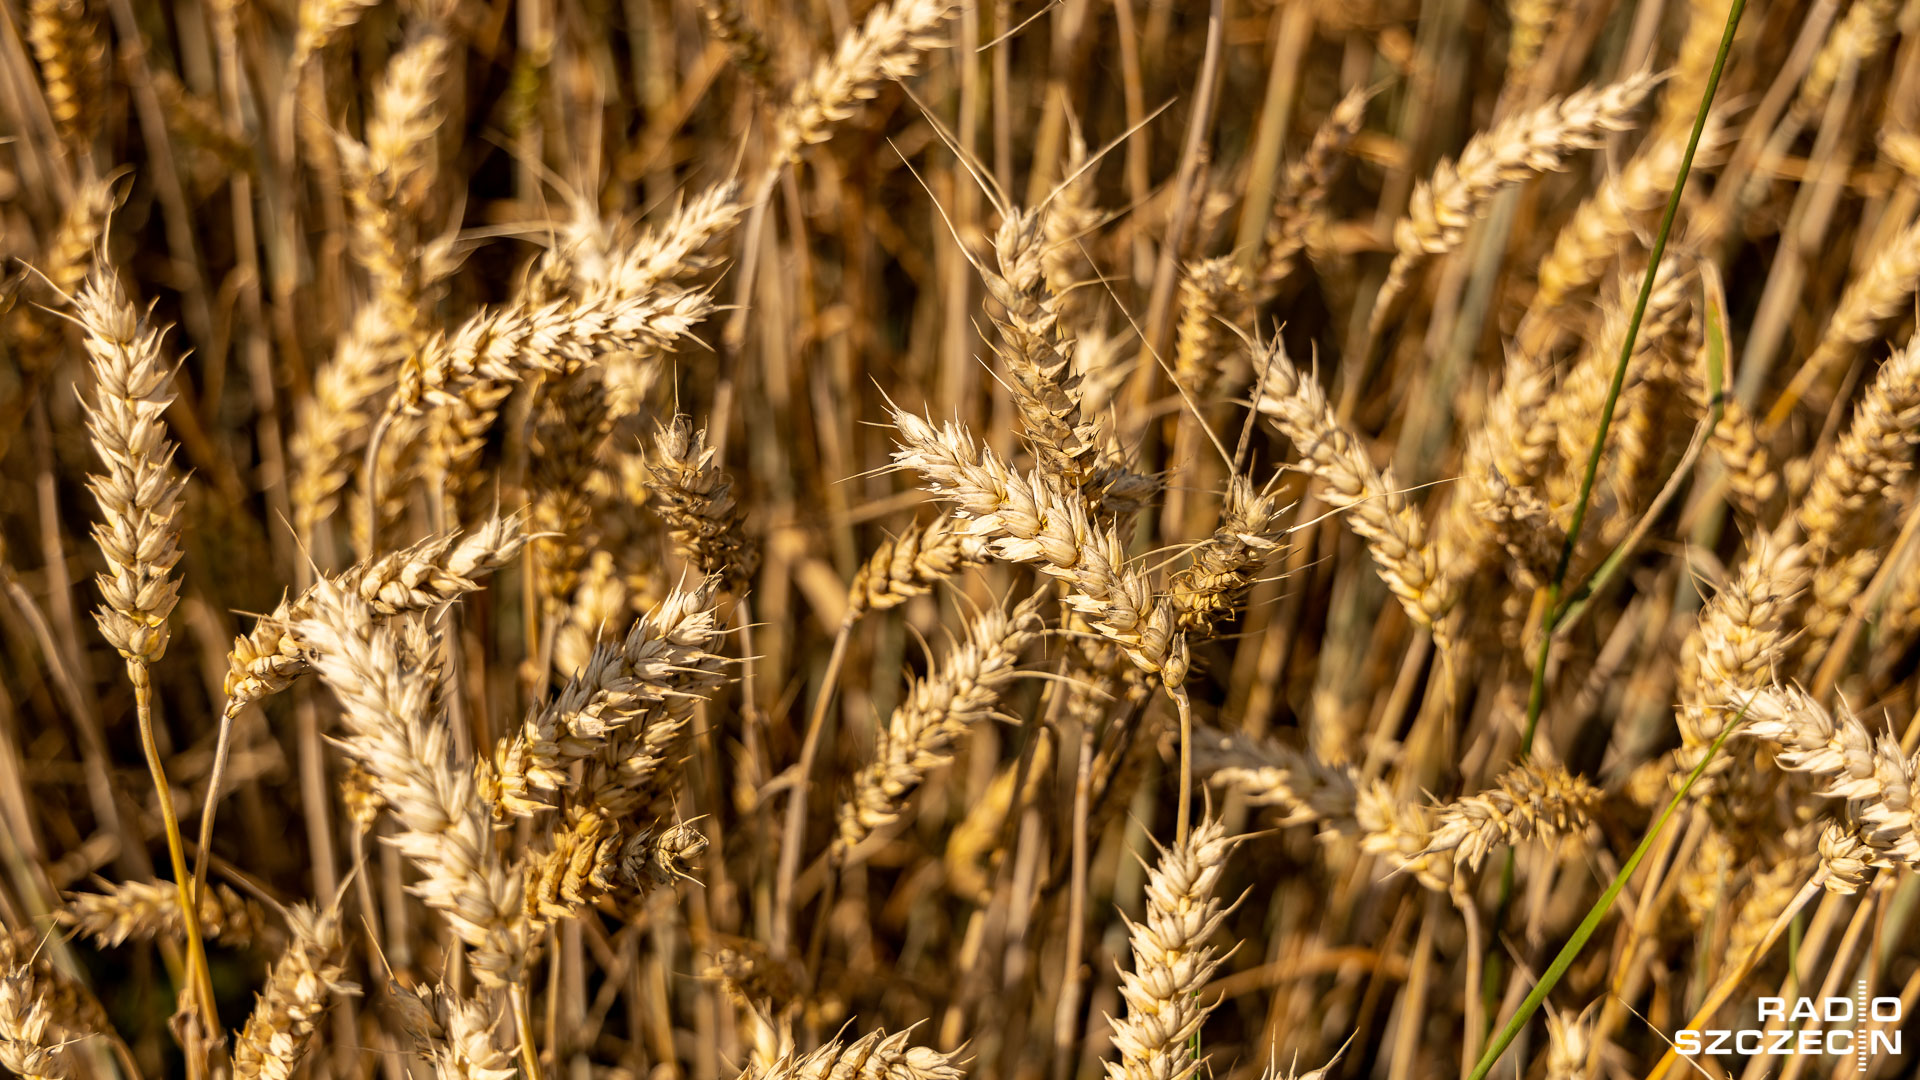 Poseł PiS: trzeba przywrócić do normy rynek zbóż